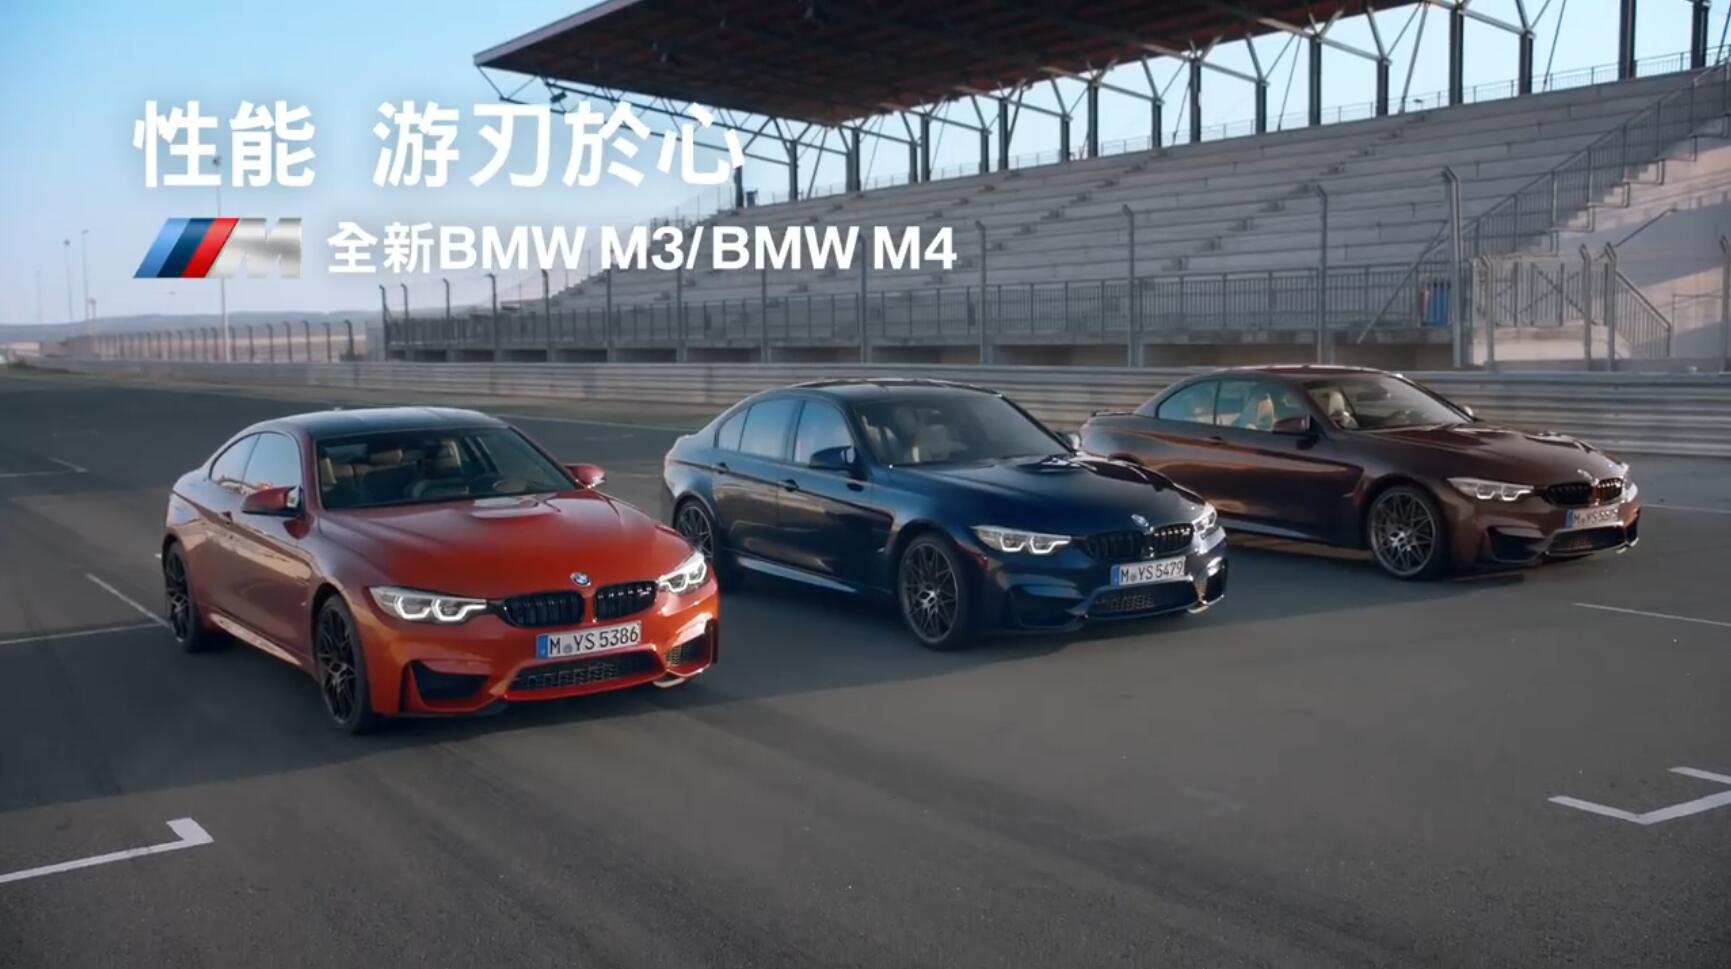 全新宝马BMW M3_宝马 BMW M4上市广告 